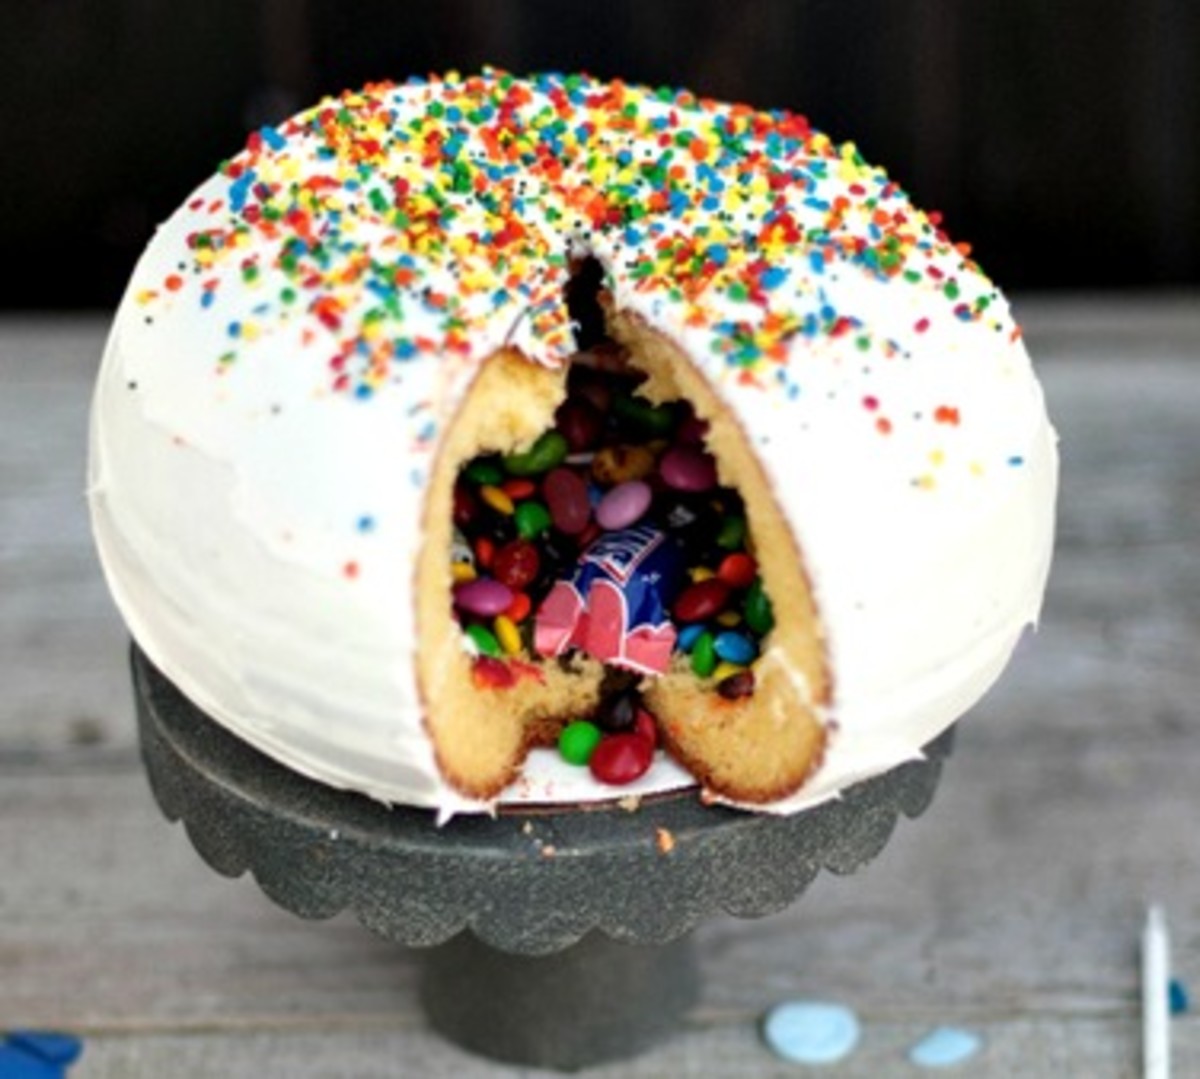 11 Adorable Birthday Cake Ideas #birthday www.TodaysMama.com